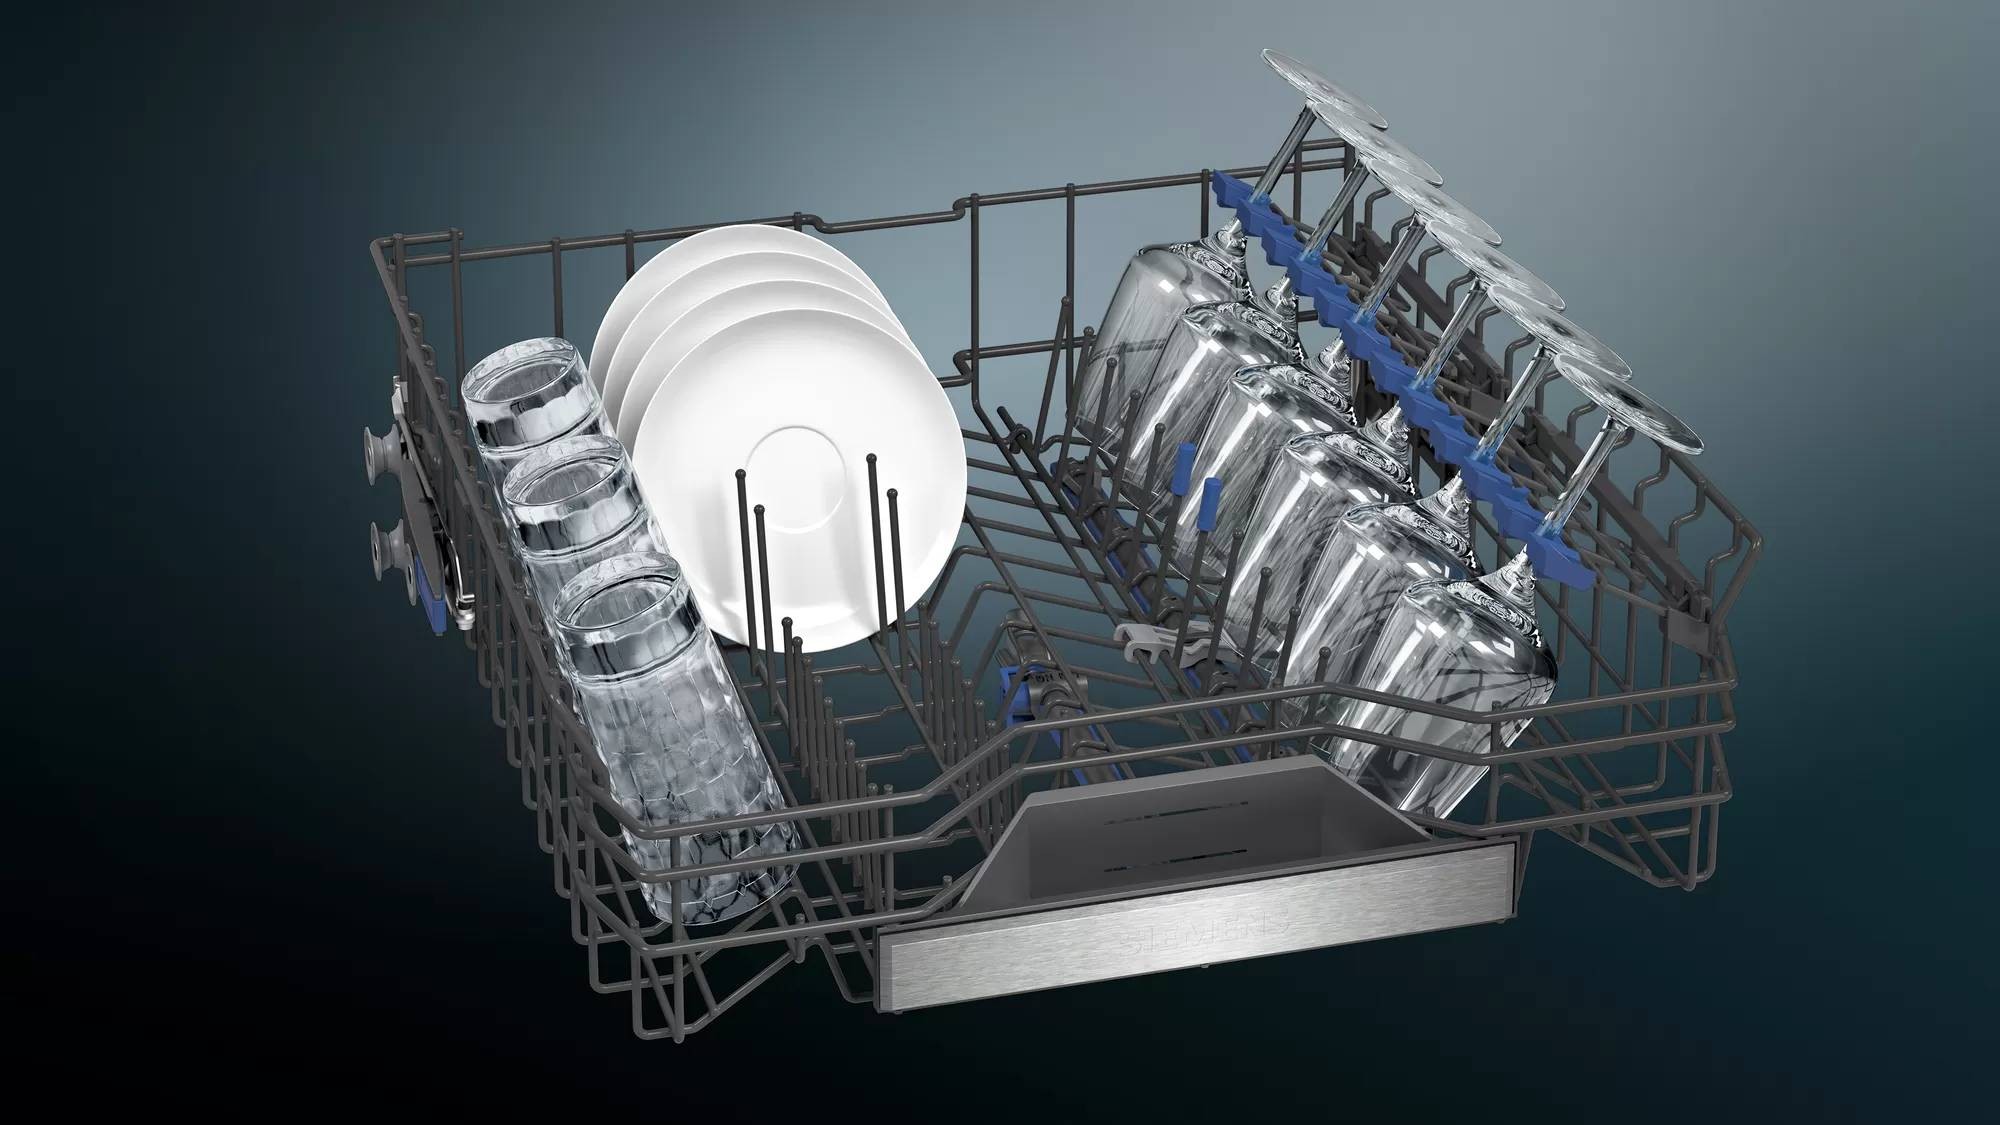 SIEMENS Lave vaisselle 60 cm iQ500 Home Connect 14 couverts - SN25ZI49CE